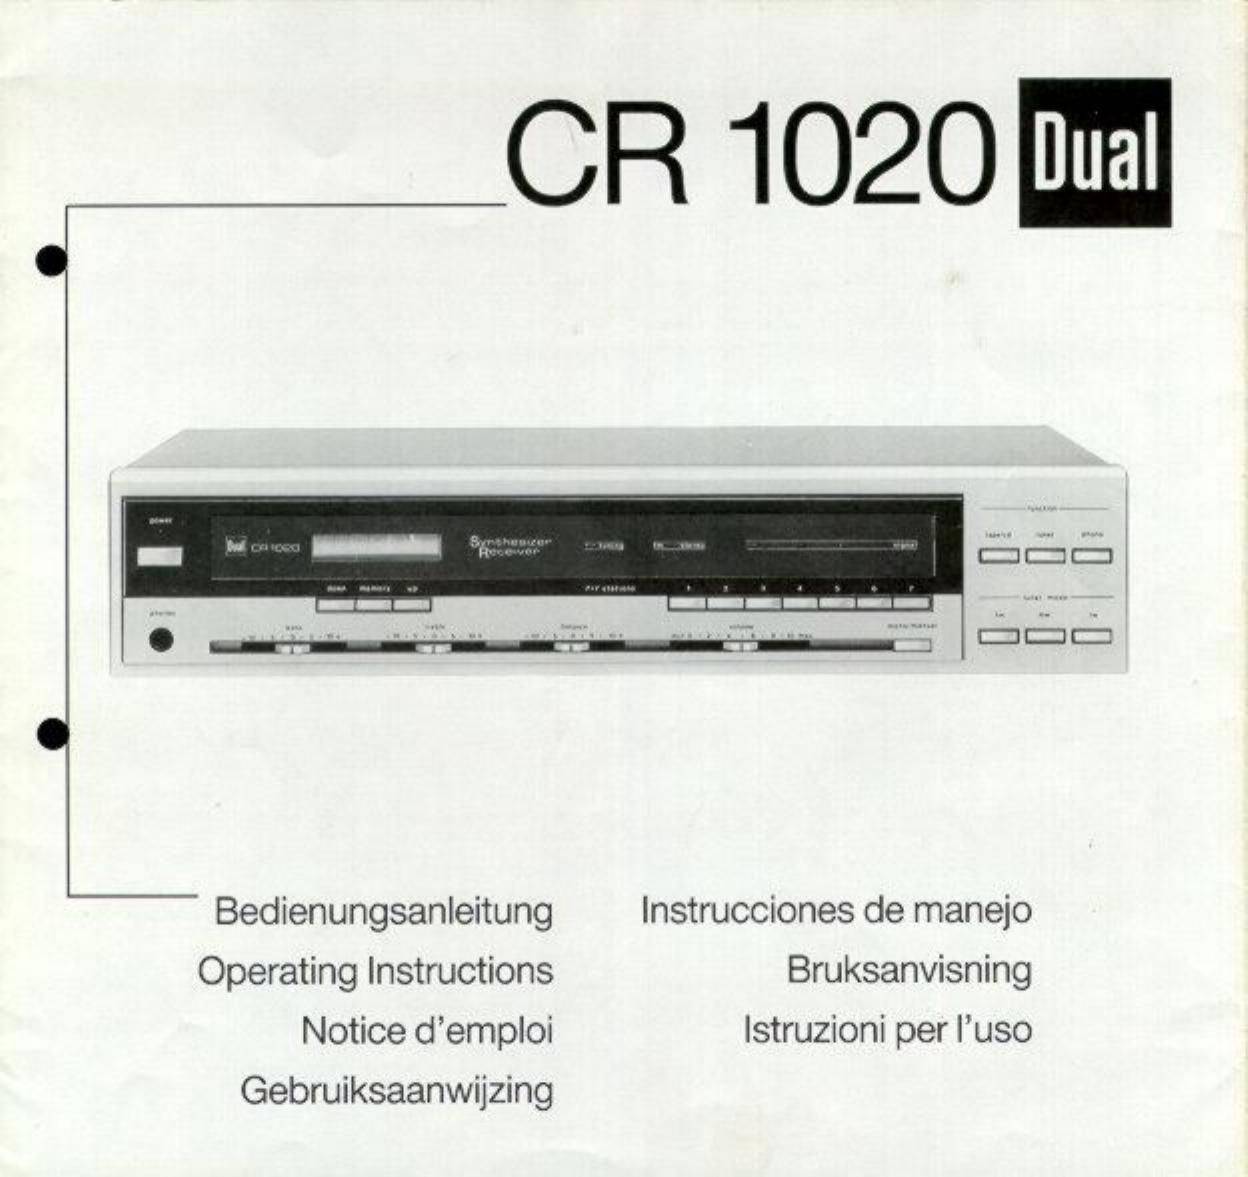 Dual CR 1020